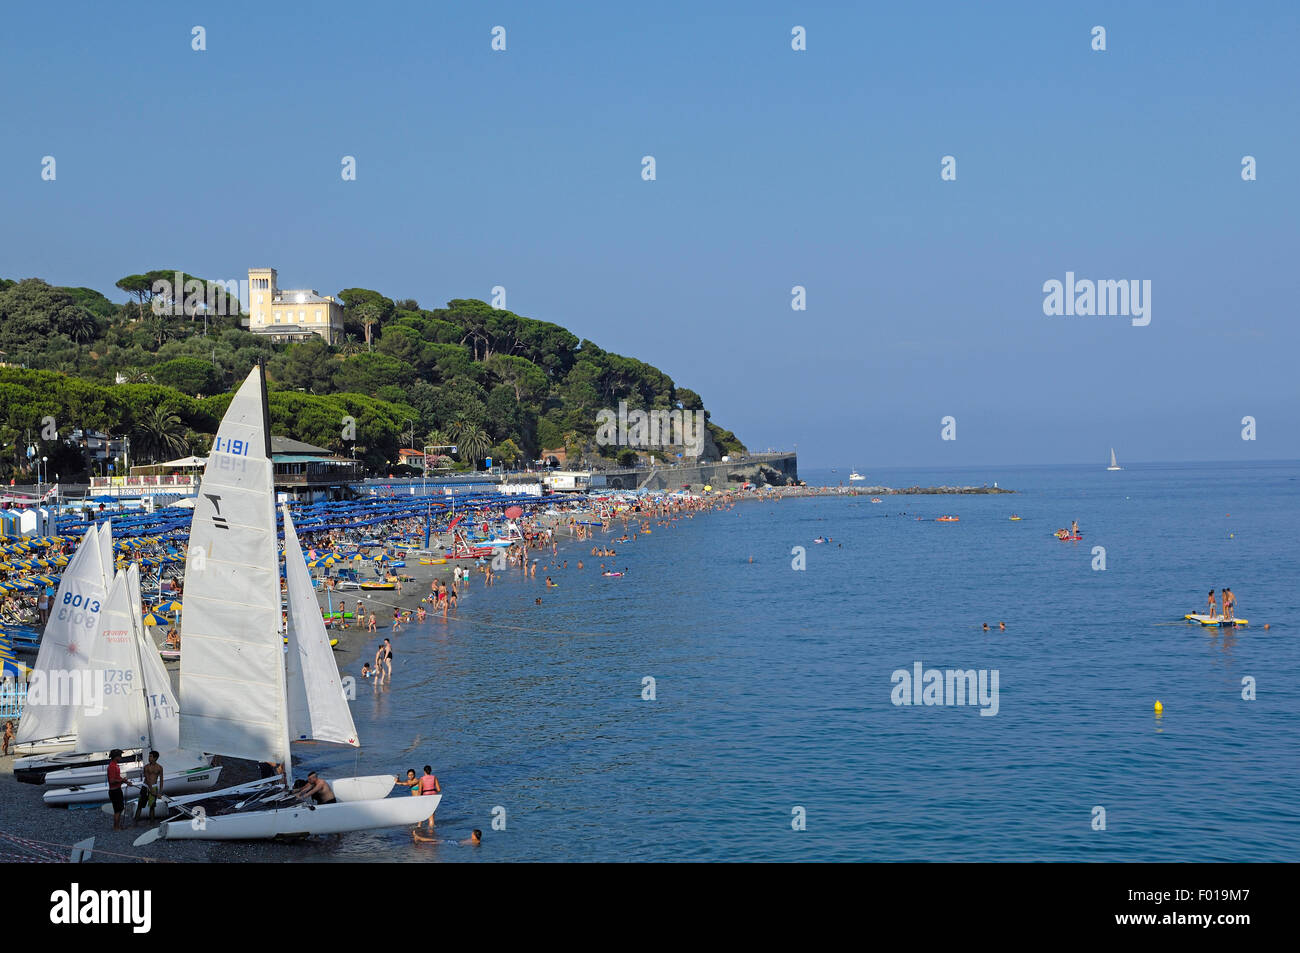 Una playa de Celle Ligure, Liguria, Italia Foto de stock